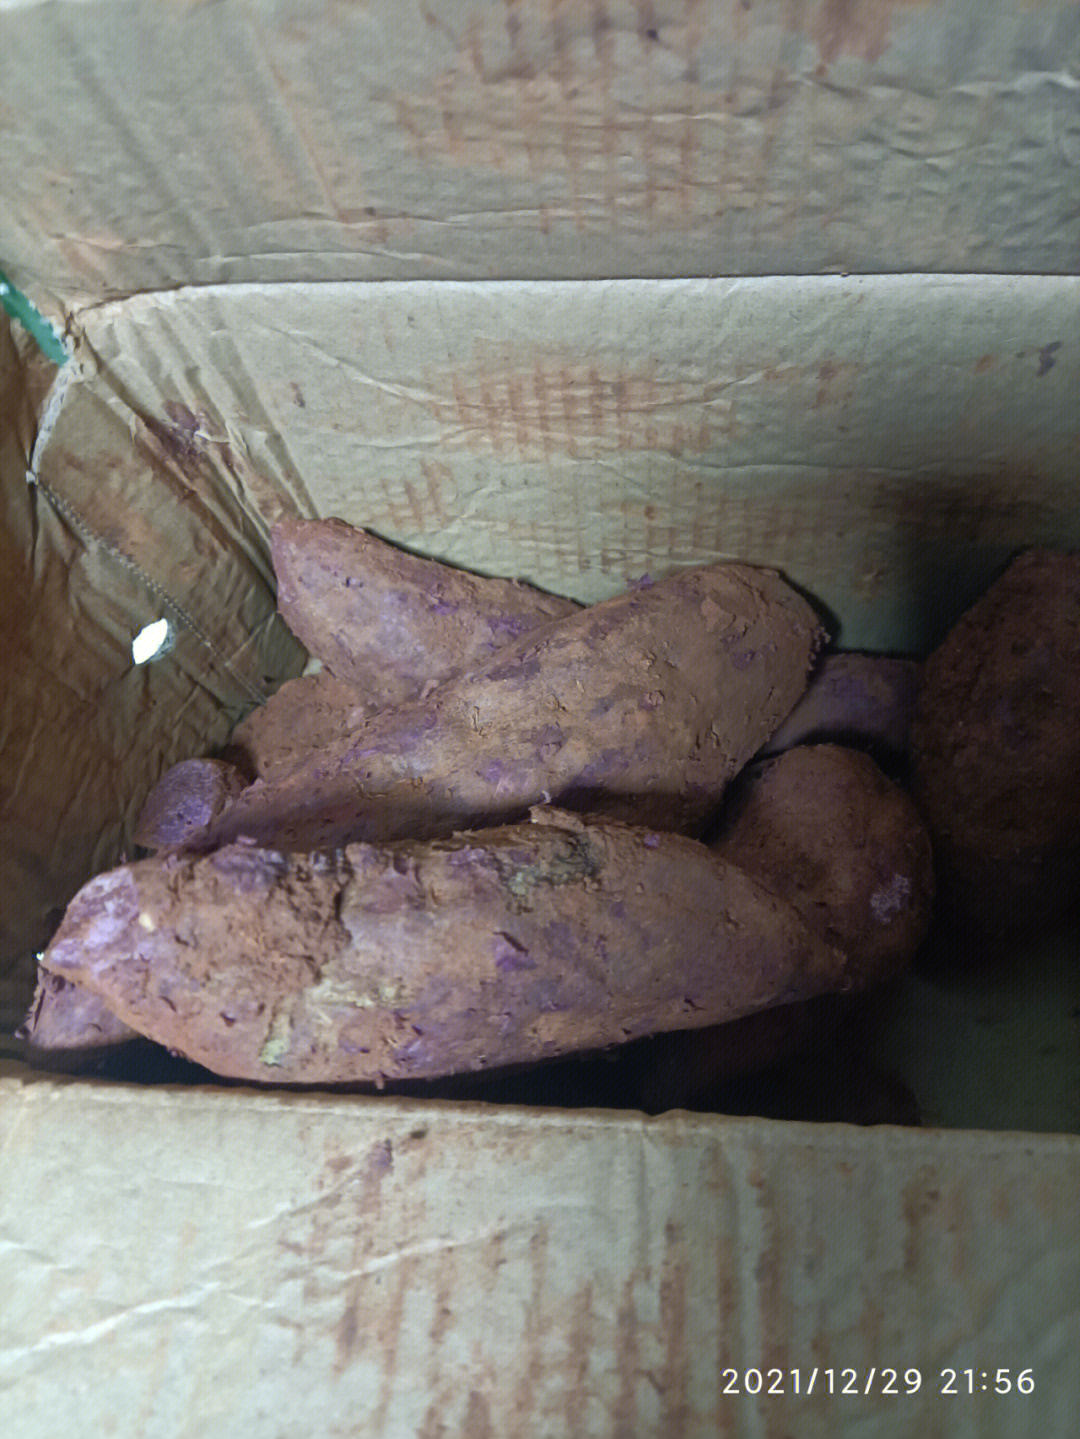 紫薯发霉图片